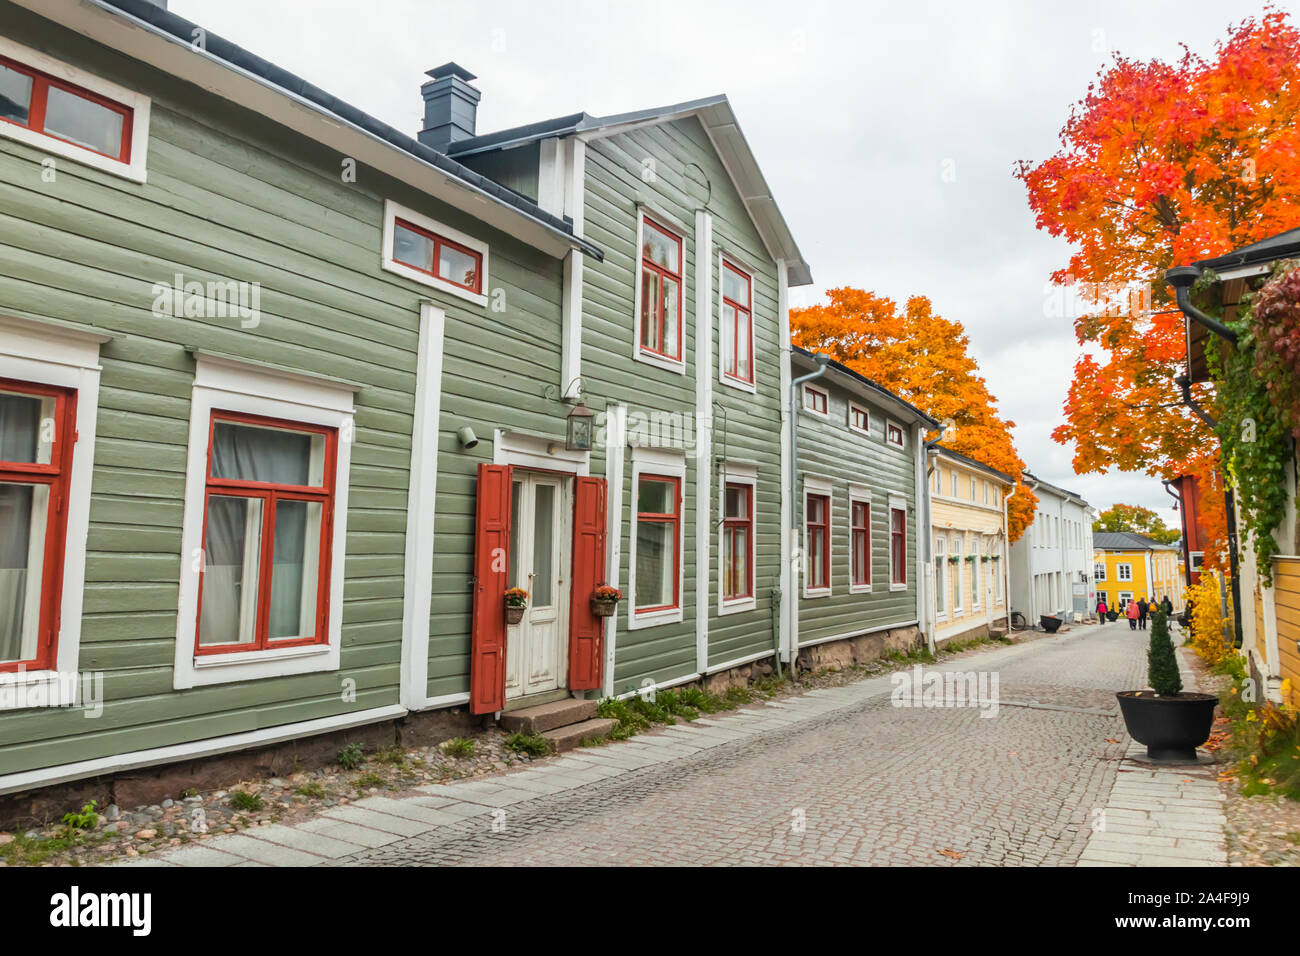 Porvoo, Finnland - 2. Oktober 2019: Straße der alten Porvoo, Finnland. Schöne Stadt Herbst Landschaft mit bunten Holzhäusern. Stockfoto